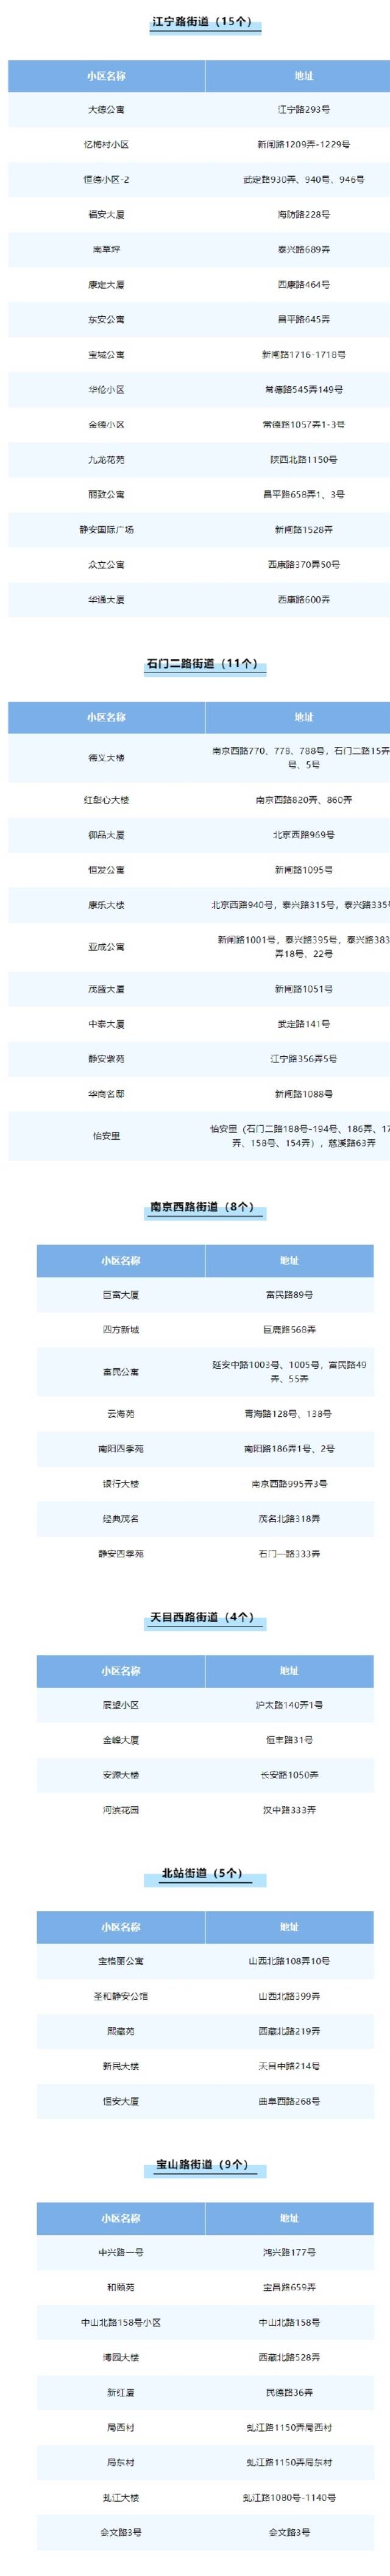 上海静安区首批“无疫小区”名单公布